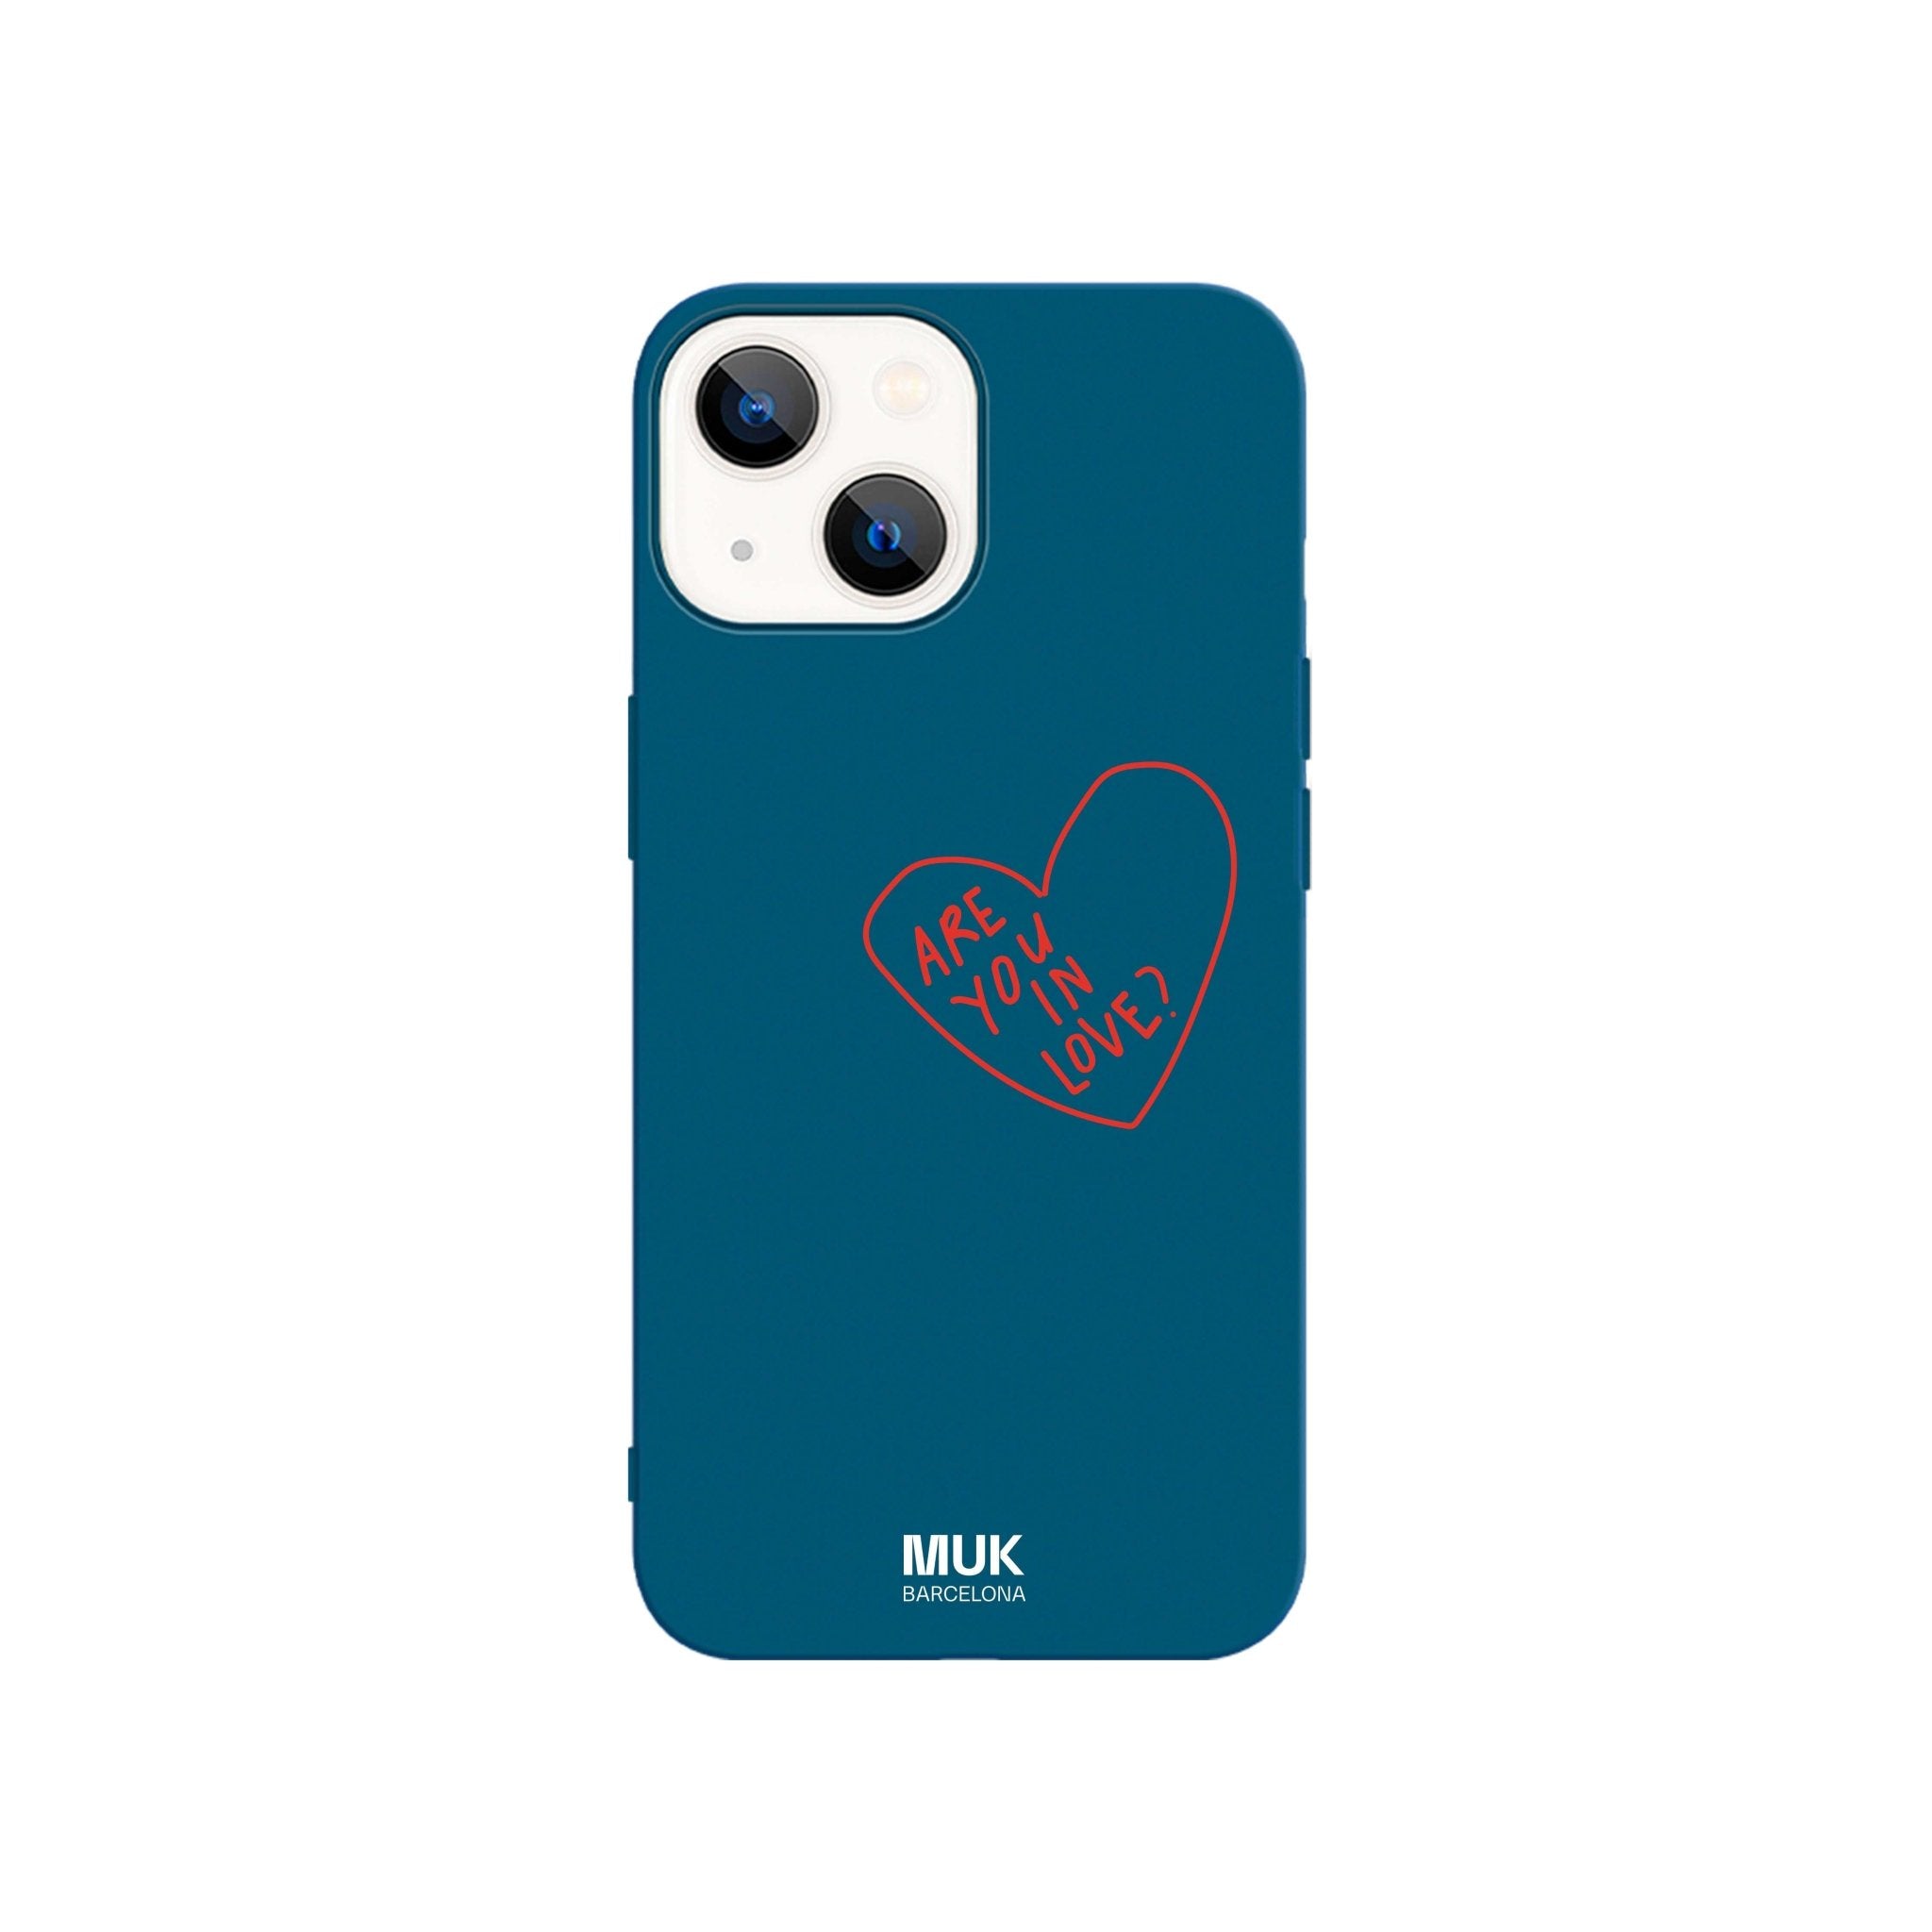 Funda de móvil TPU azul con corazón rojo y texto “Are you in love?”
